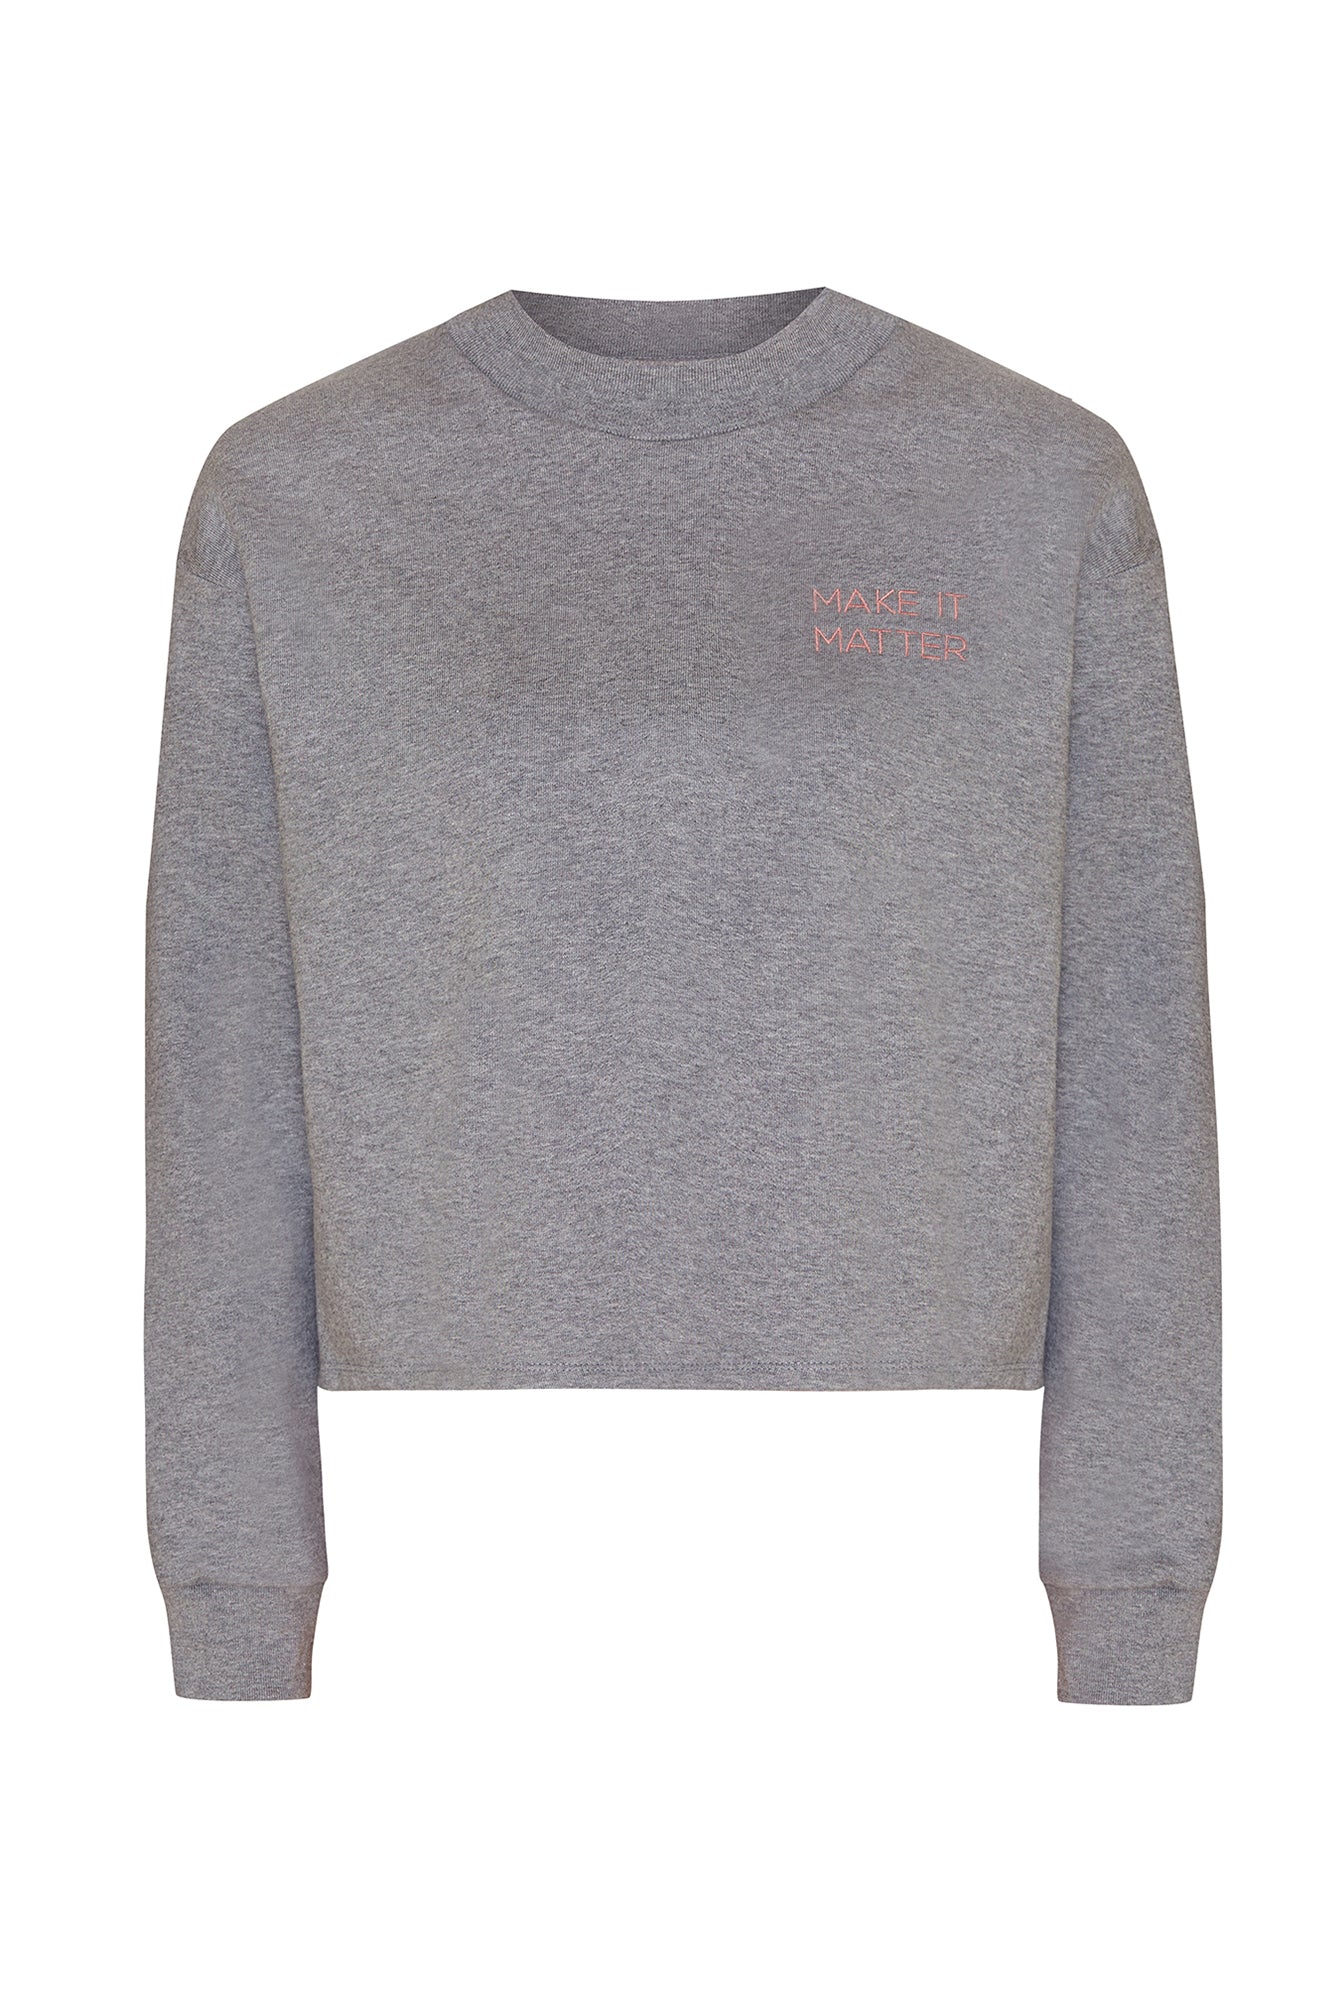 Make It Matter Sweater Grau